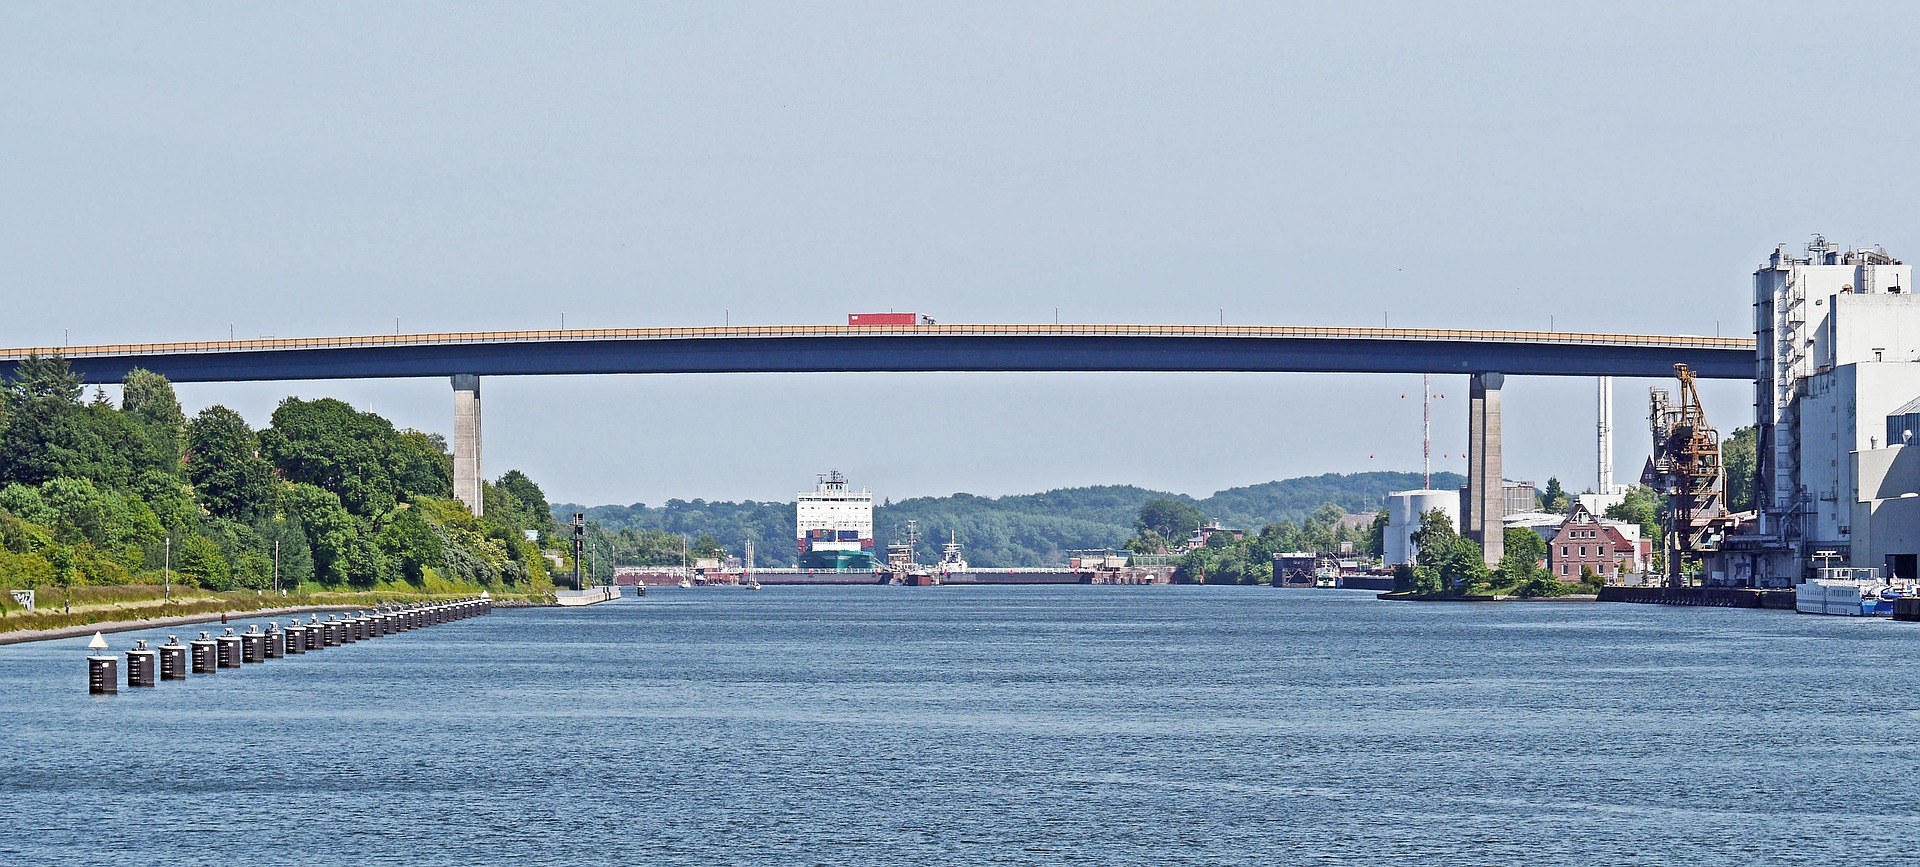 Der nord-ostsee-kanal mit einer Brücke an einem wolkenlosen Tag.